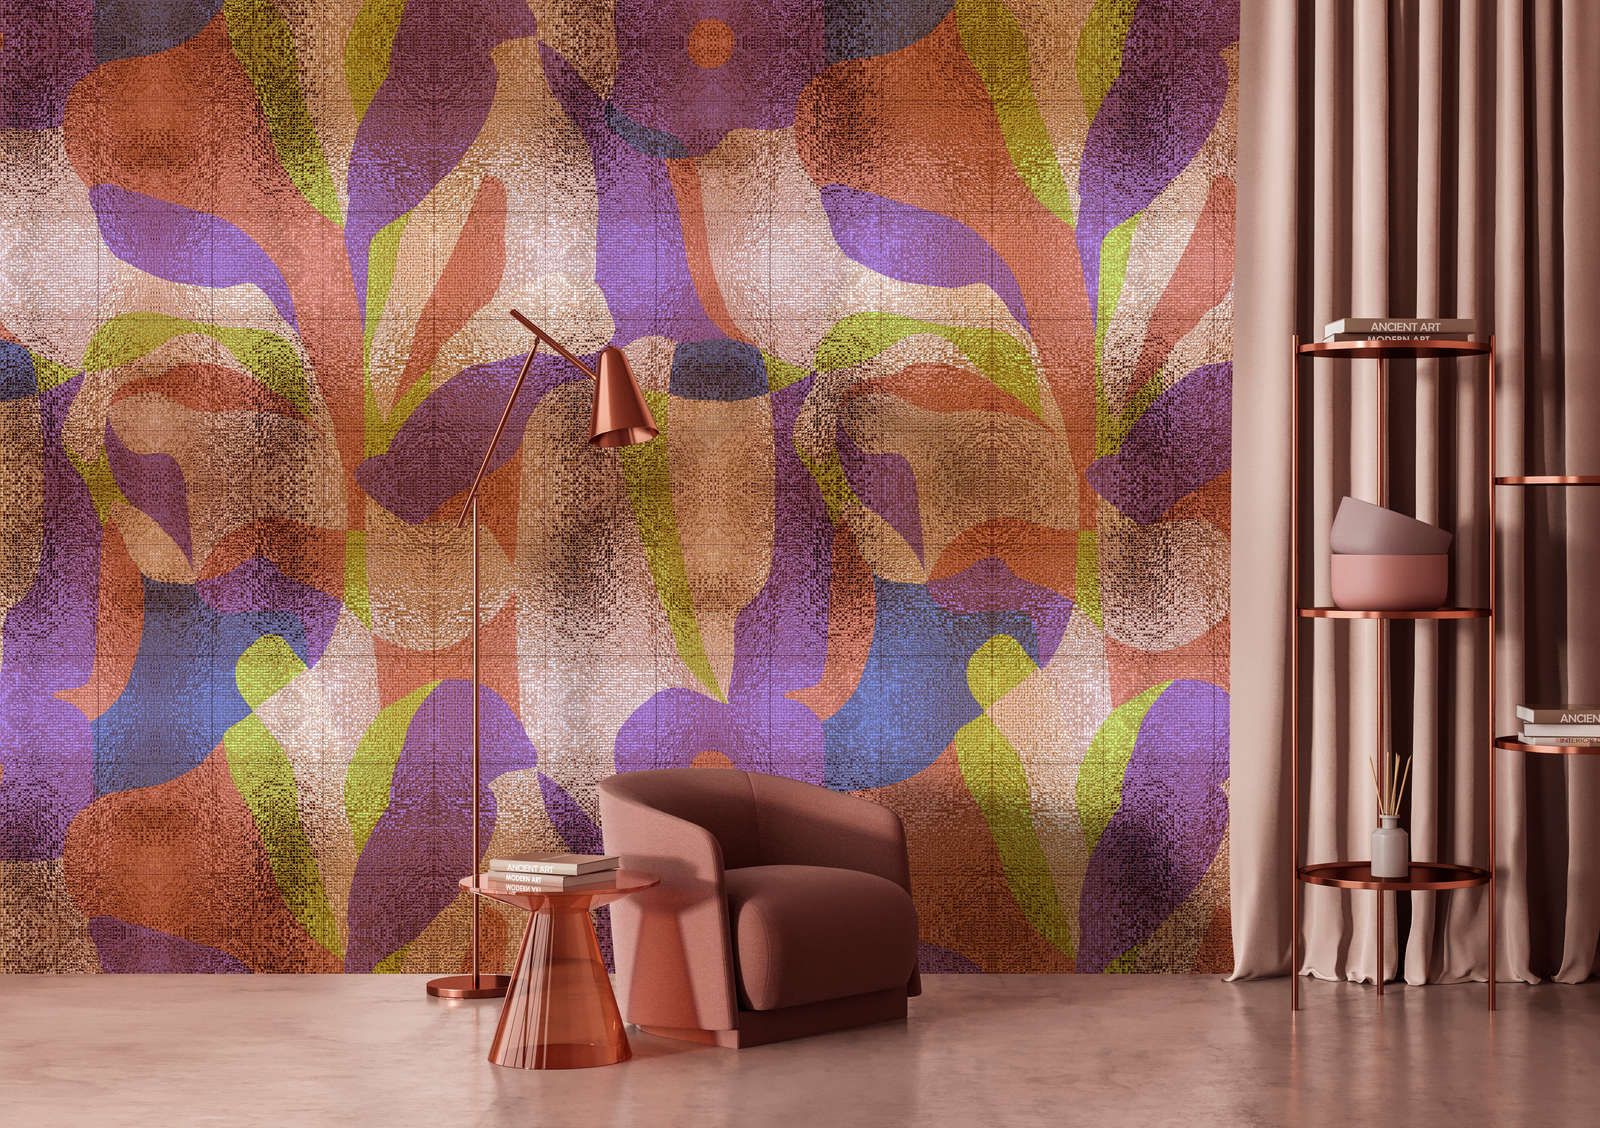             Fototapete »brillanaza« - Grafisches buntes Blätterdesign mit Mosaikstruktur – Glattes, leicht glänzendes Premiumvlies
        